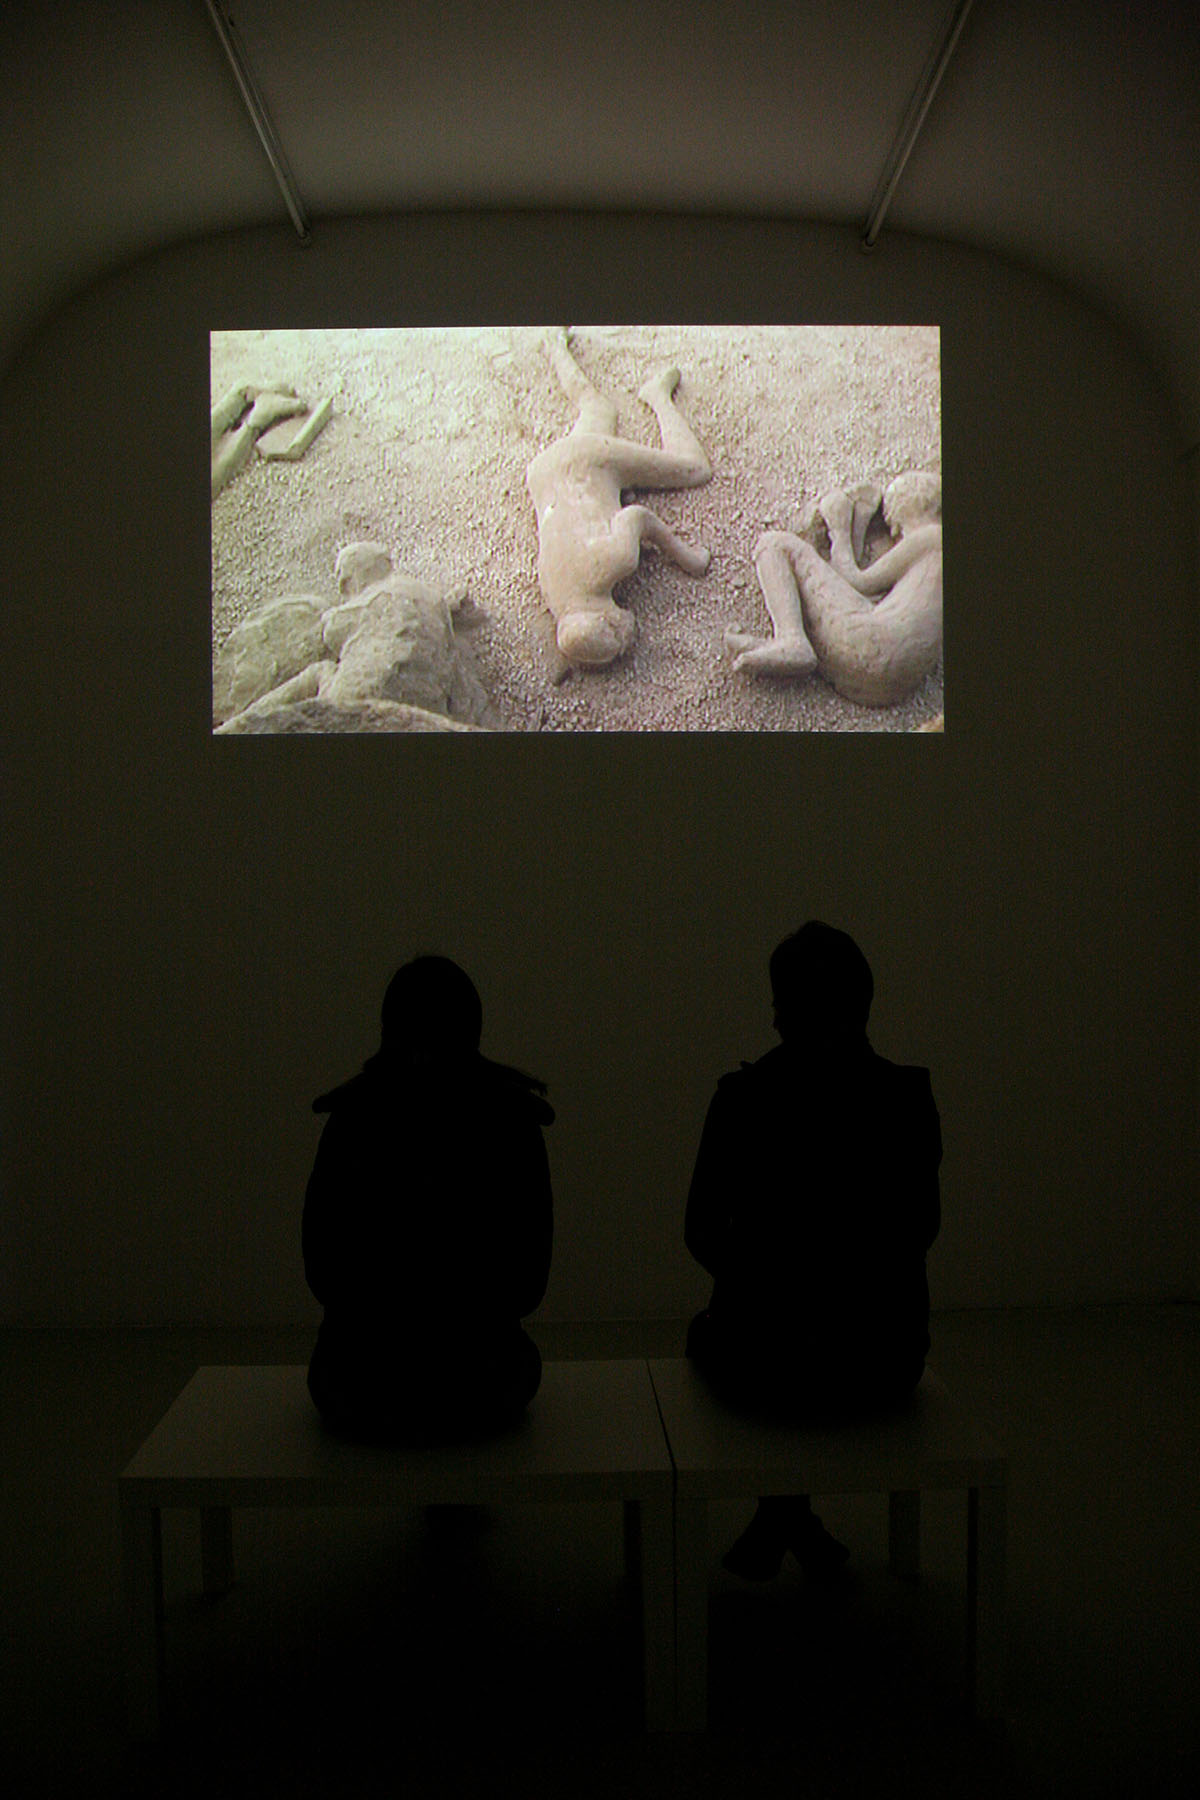 Sergio Vega, Hashish in Naples, 2009, exhibition view at Galleria Umberto Di Marino, Napoli, Photo: Courtesy of Danilo Donzelli